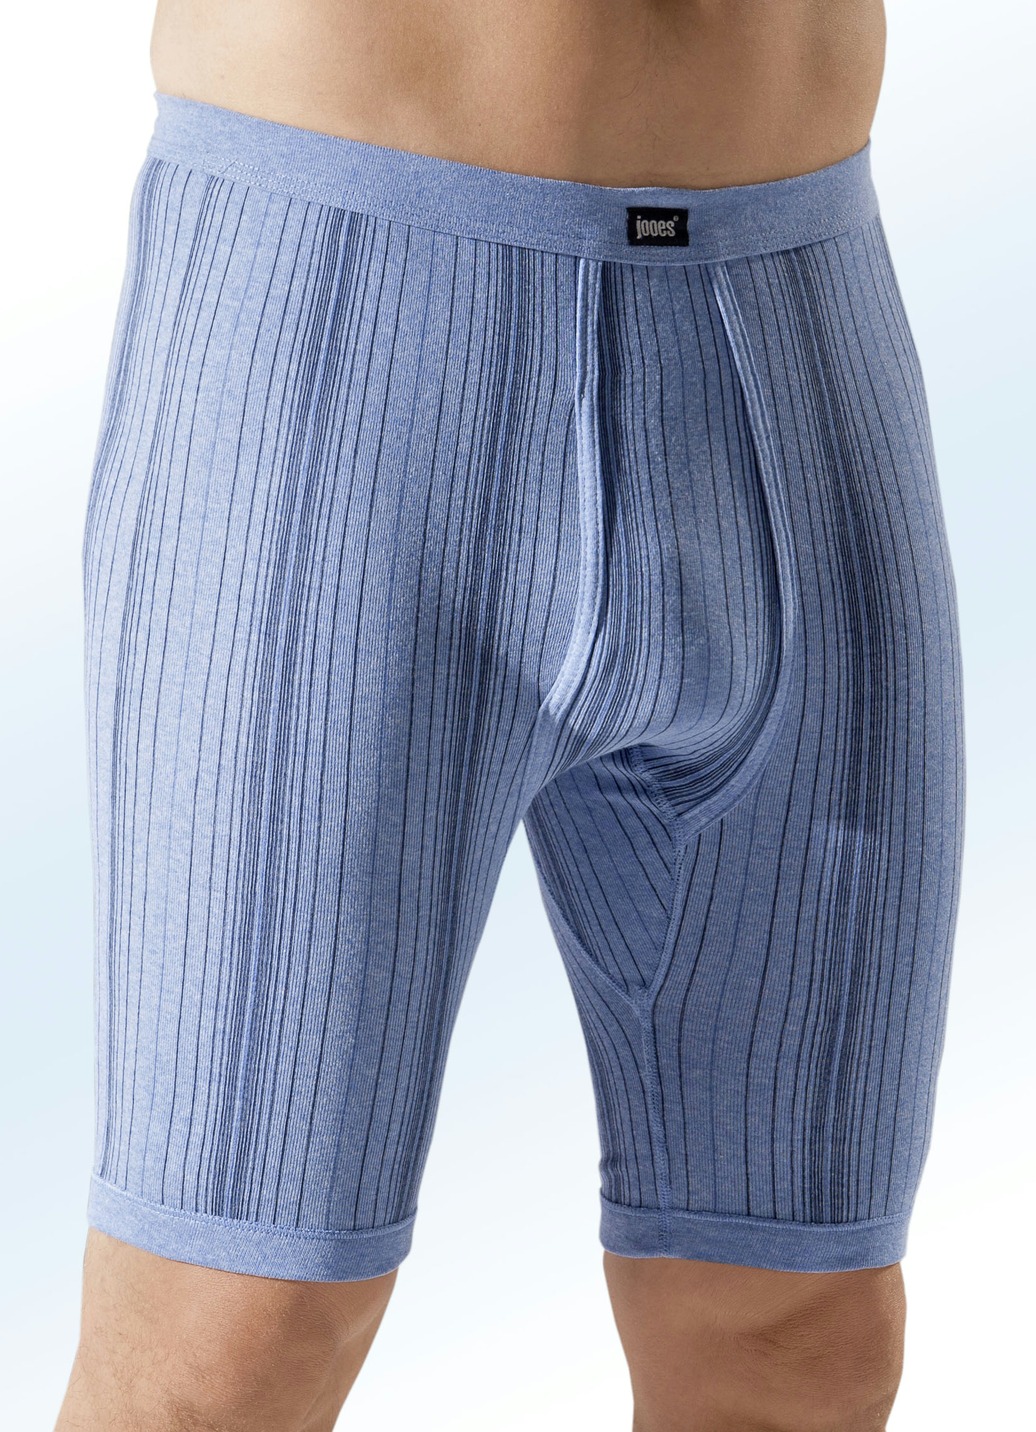 Dreierpack Unterhosen aus Feinripp, knielang, gestreift, 2X Jeansblau Meliert-Bunt, 1X Uni Ultramarin, Größe 12 von BADER